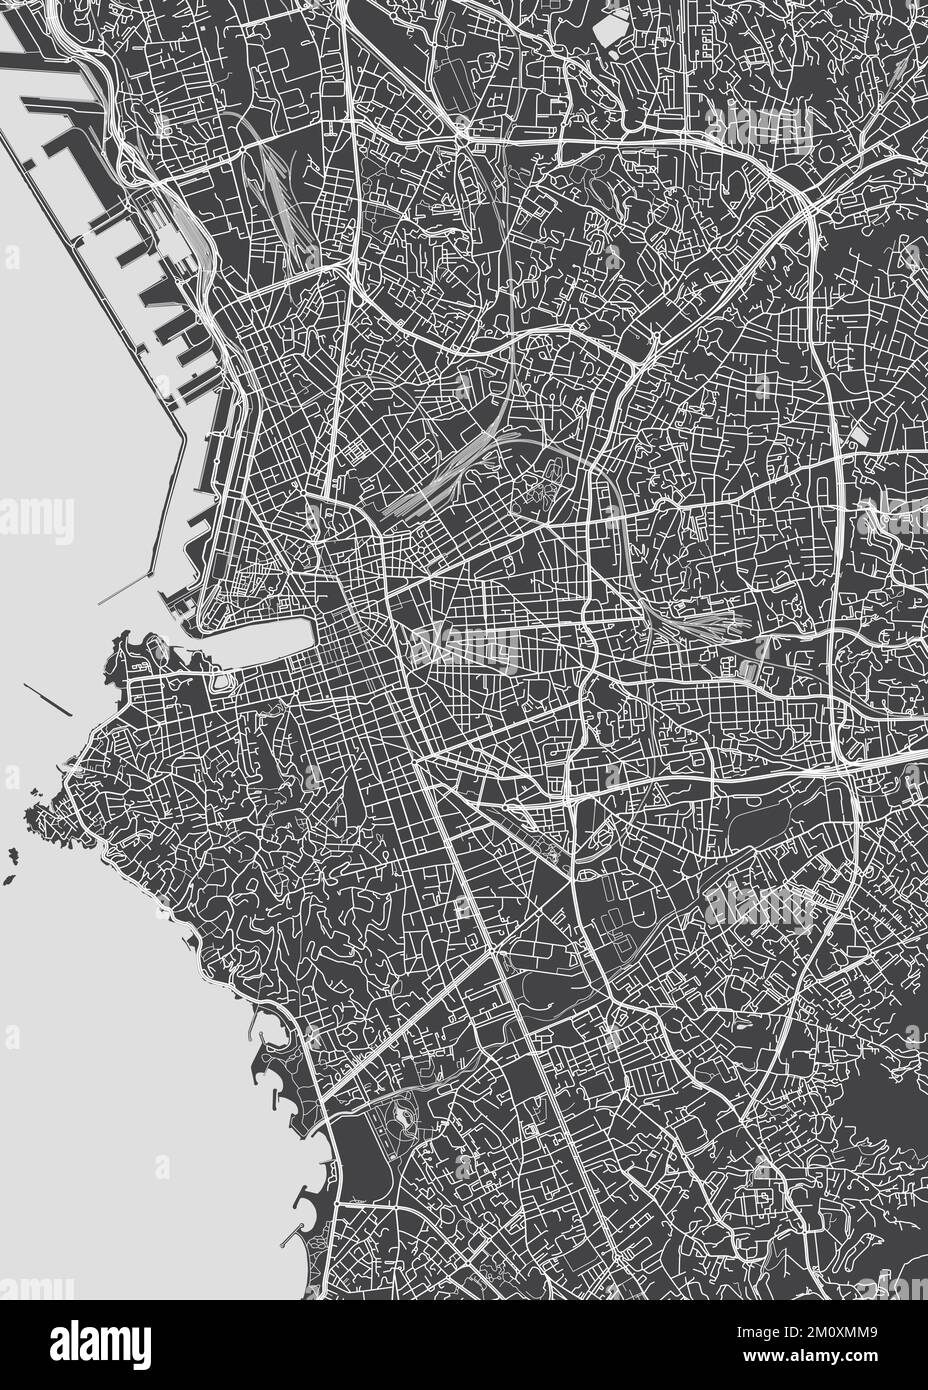 Plan de la ville de Marseille, plan détaillé monochrome, illustration vectorielle Illustration de Vecteur